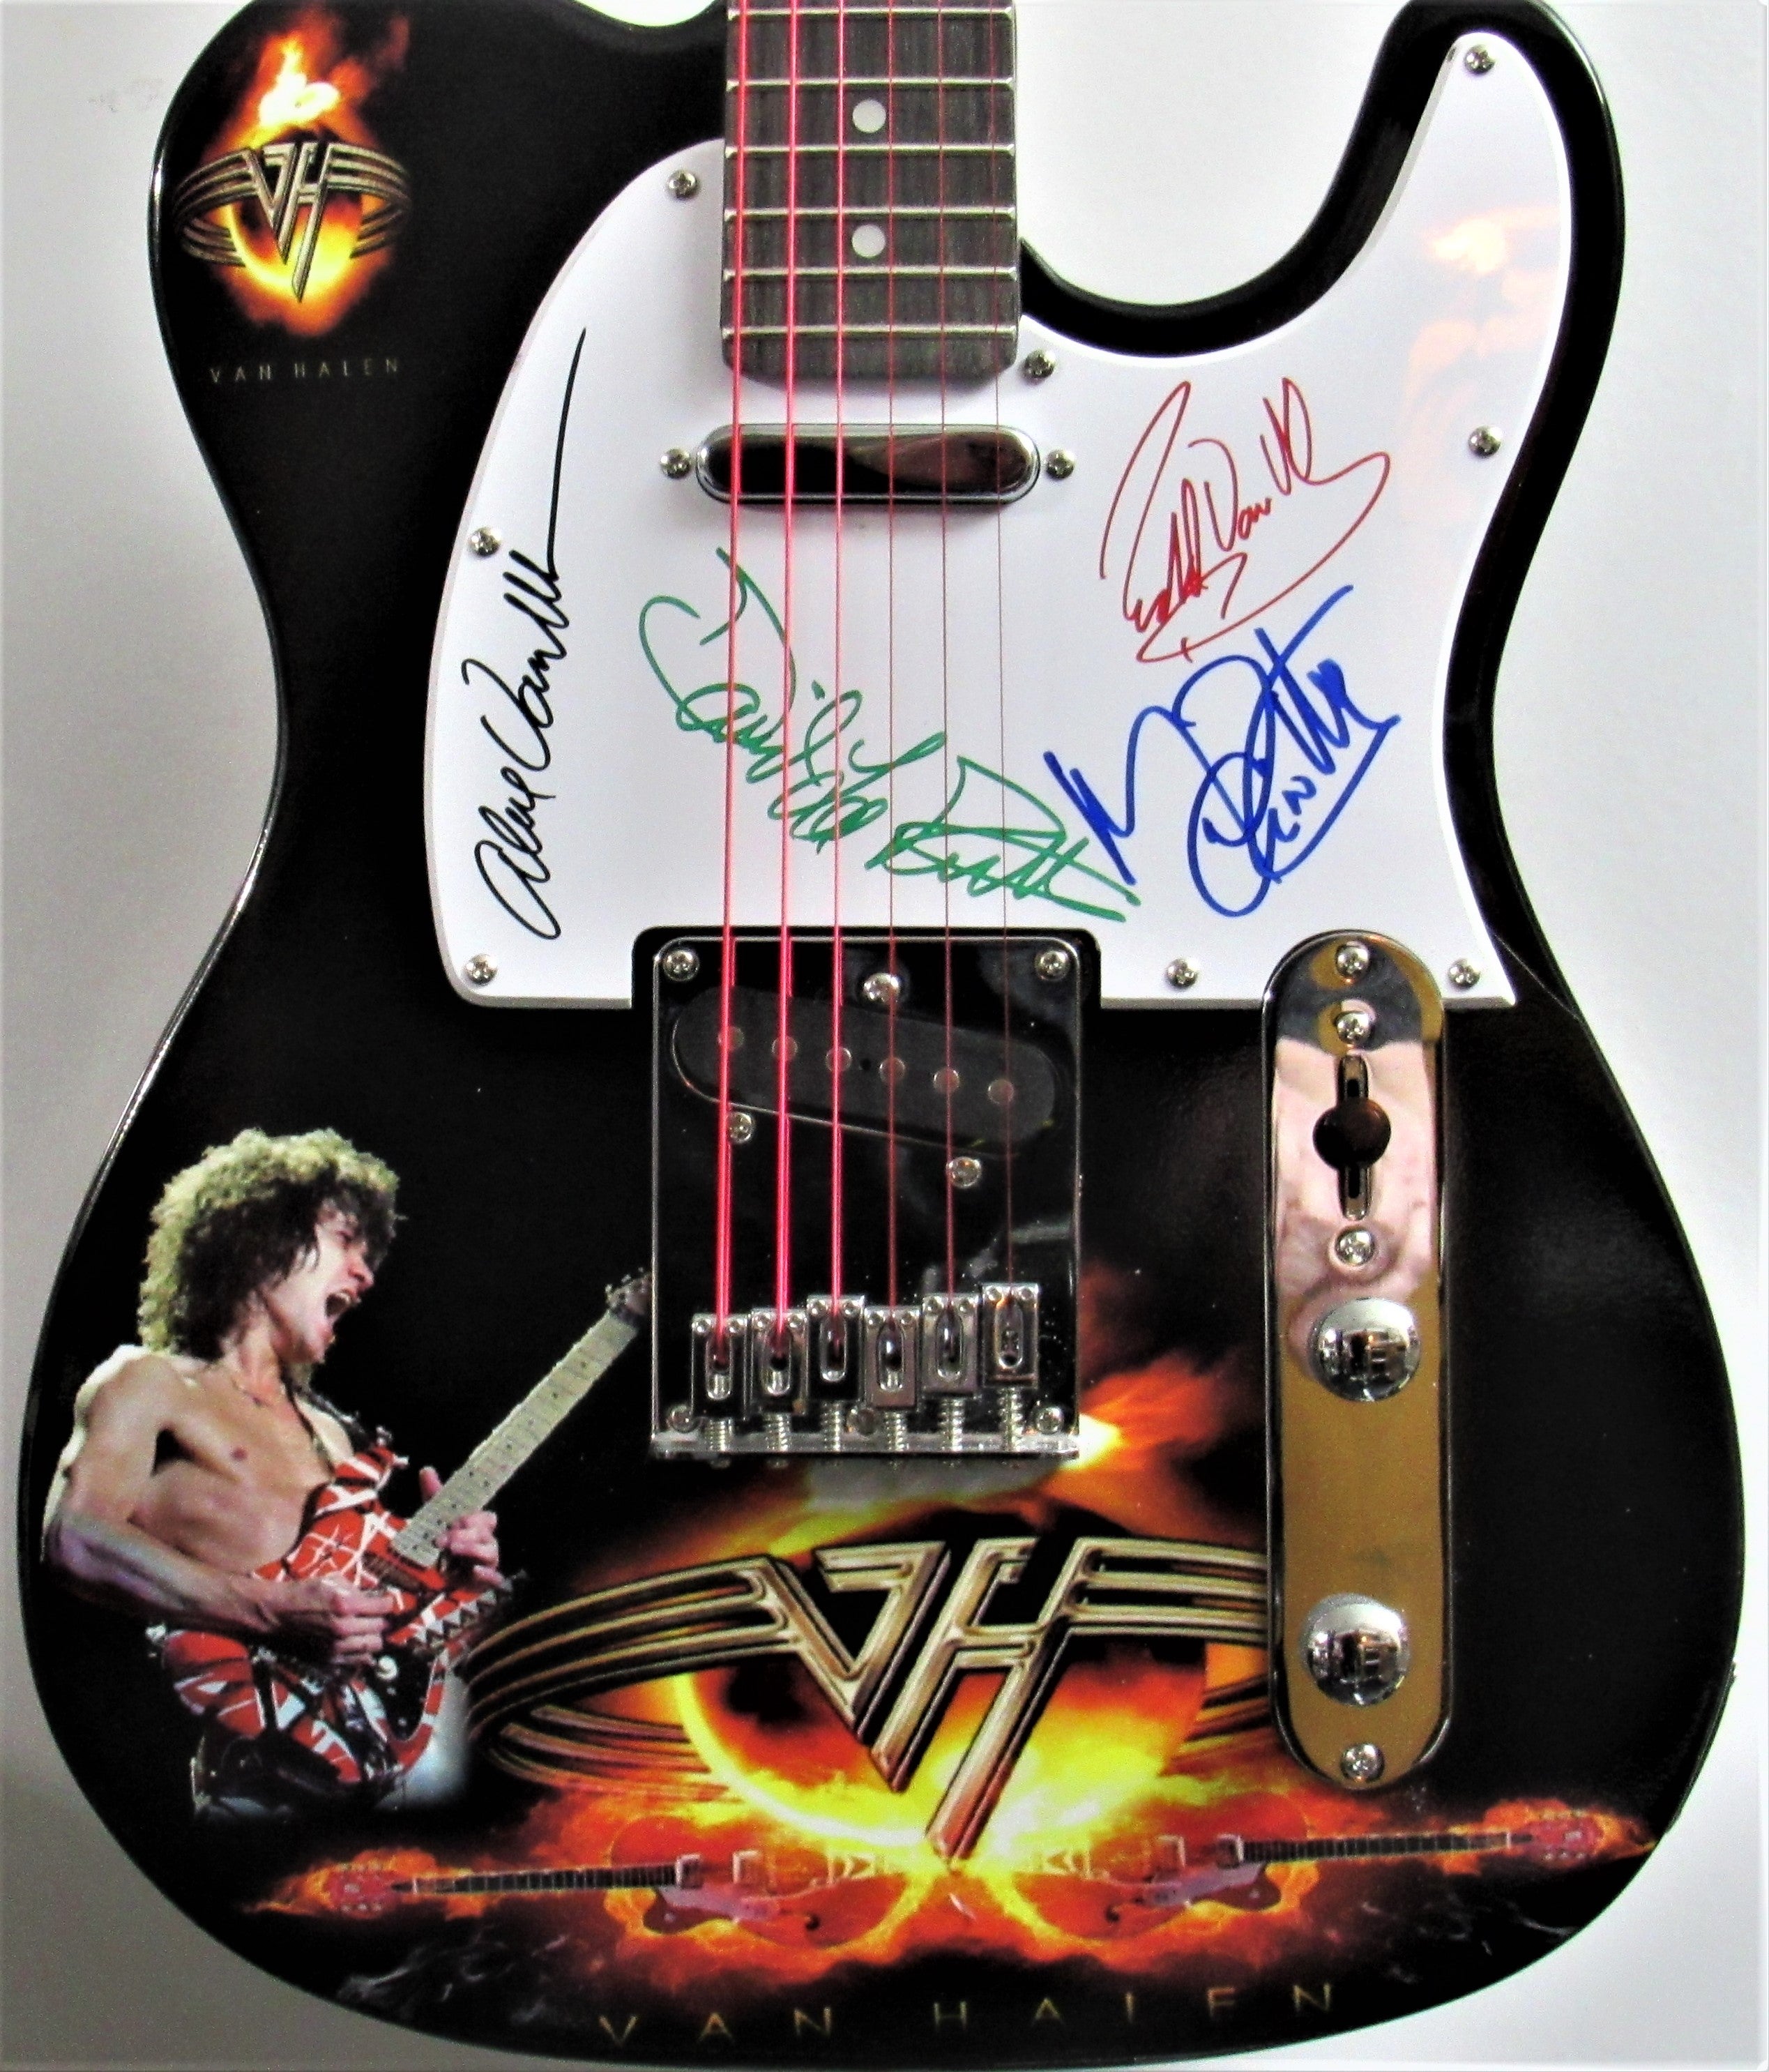 Van Halen's Legendary M&M's Rider